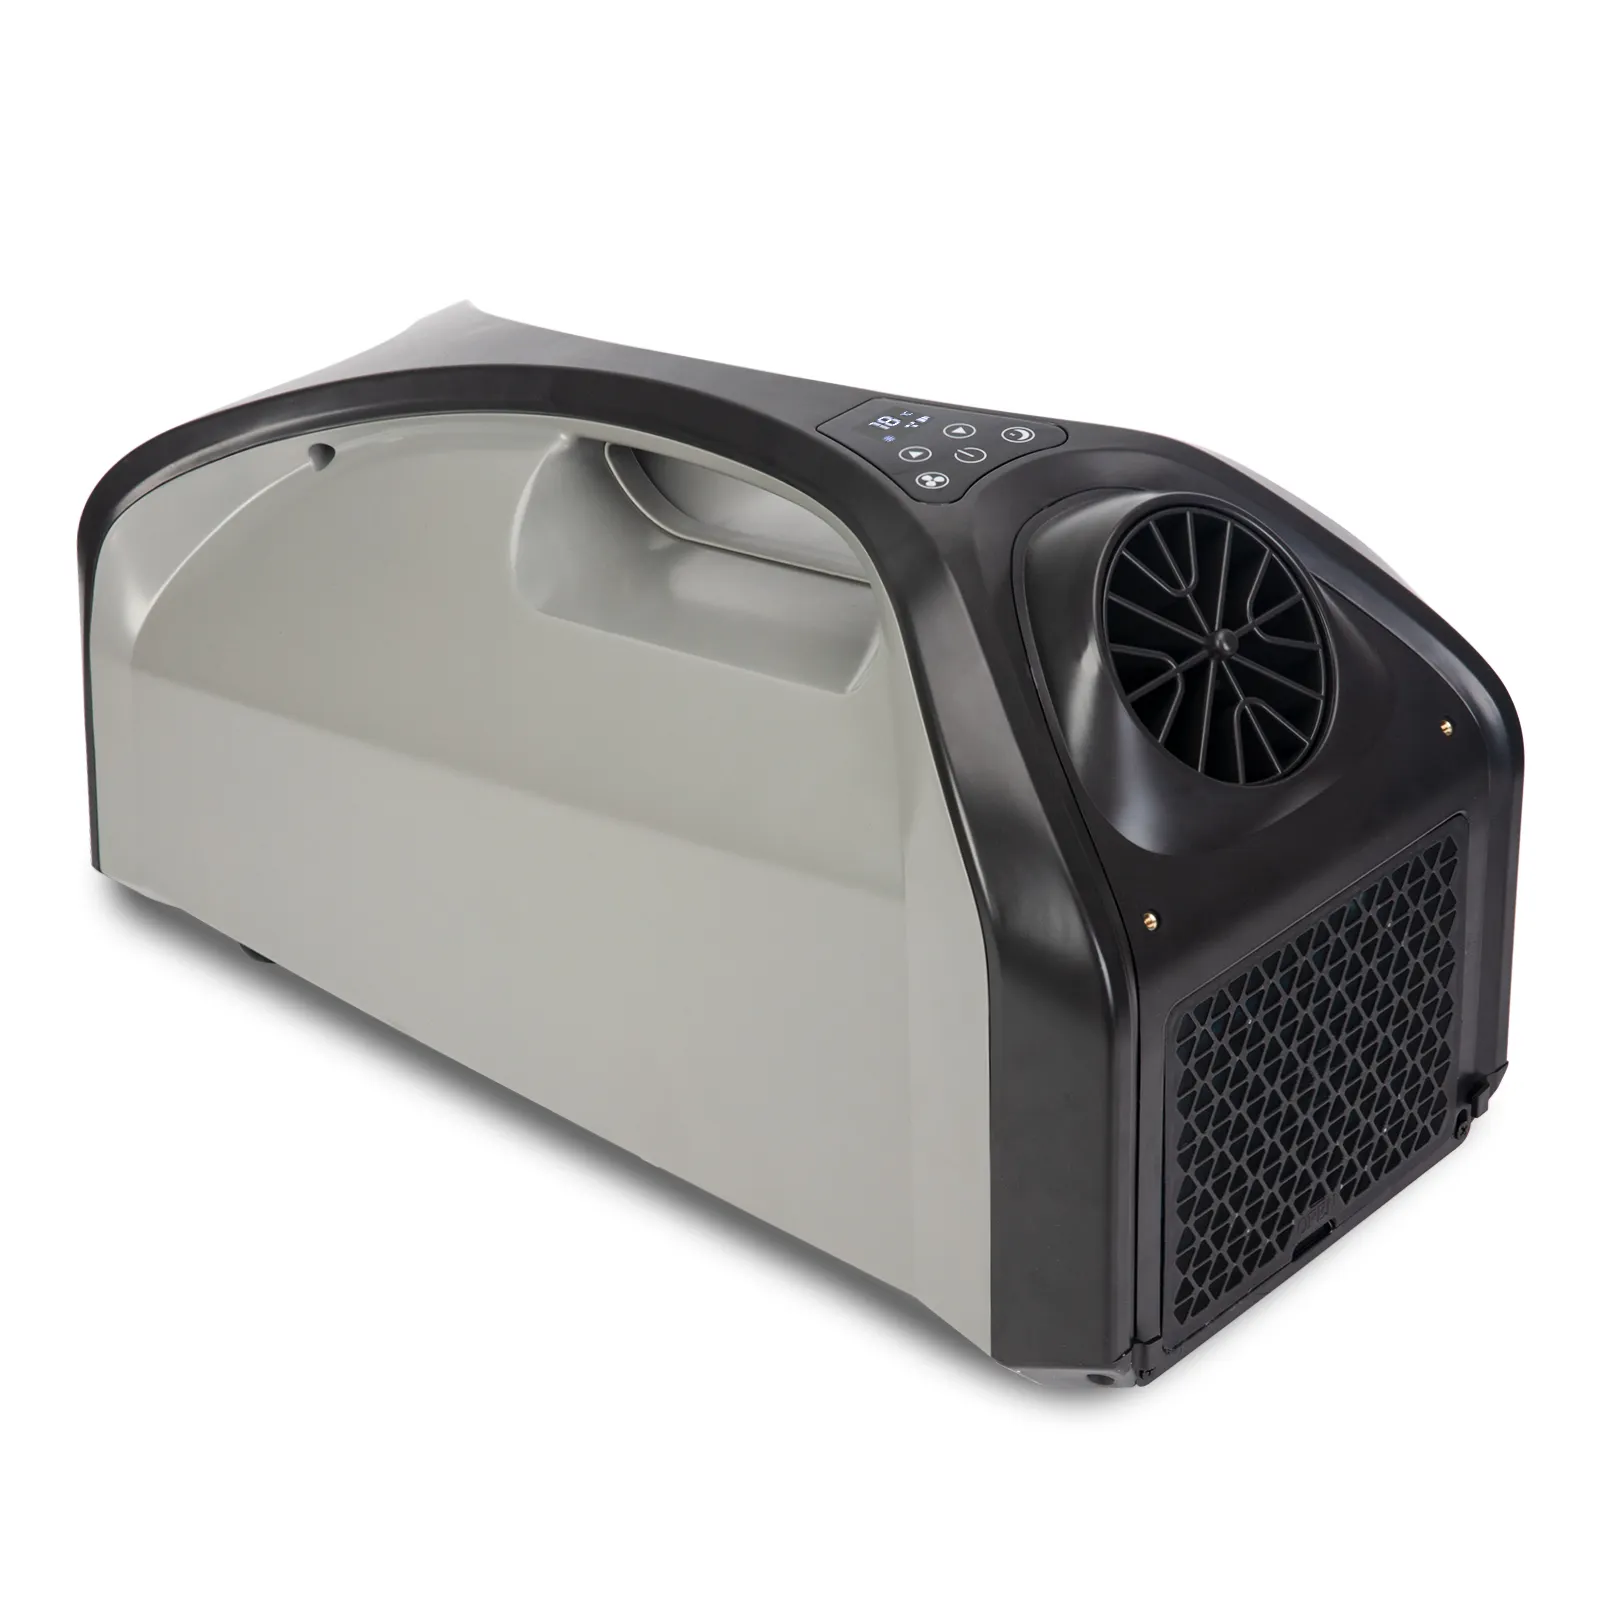 Nuovo stile tenda portatile condizionatore d'aria macchina di raffreddamento con Design di alta qualità per campeggio RV uso esterno